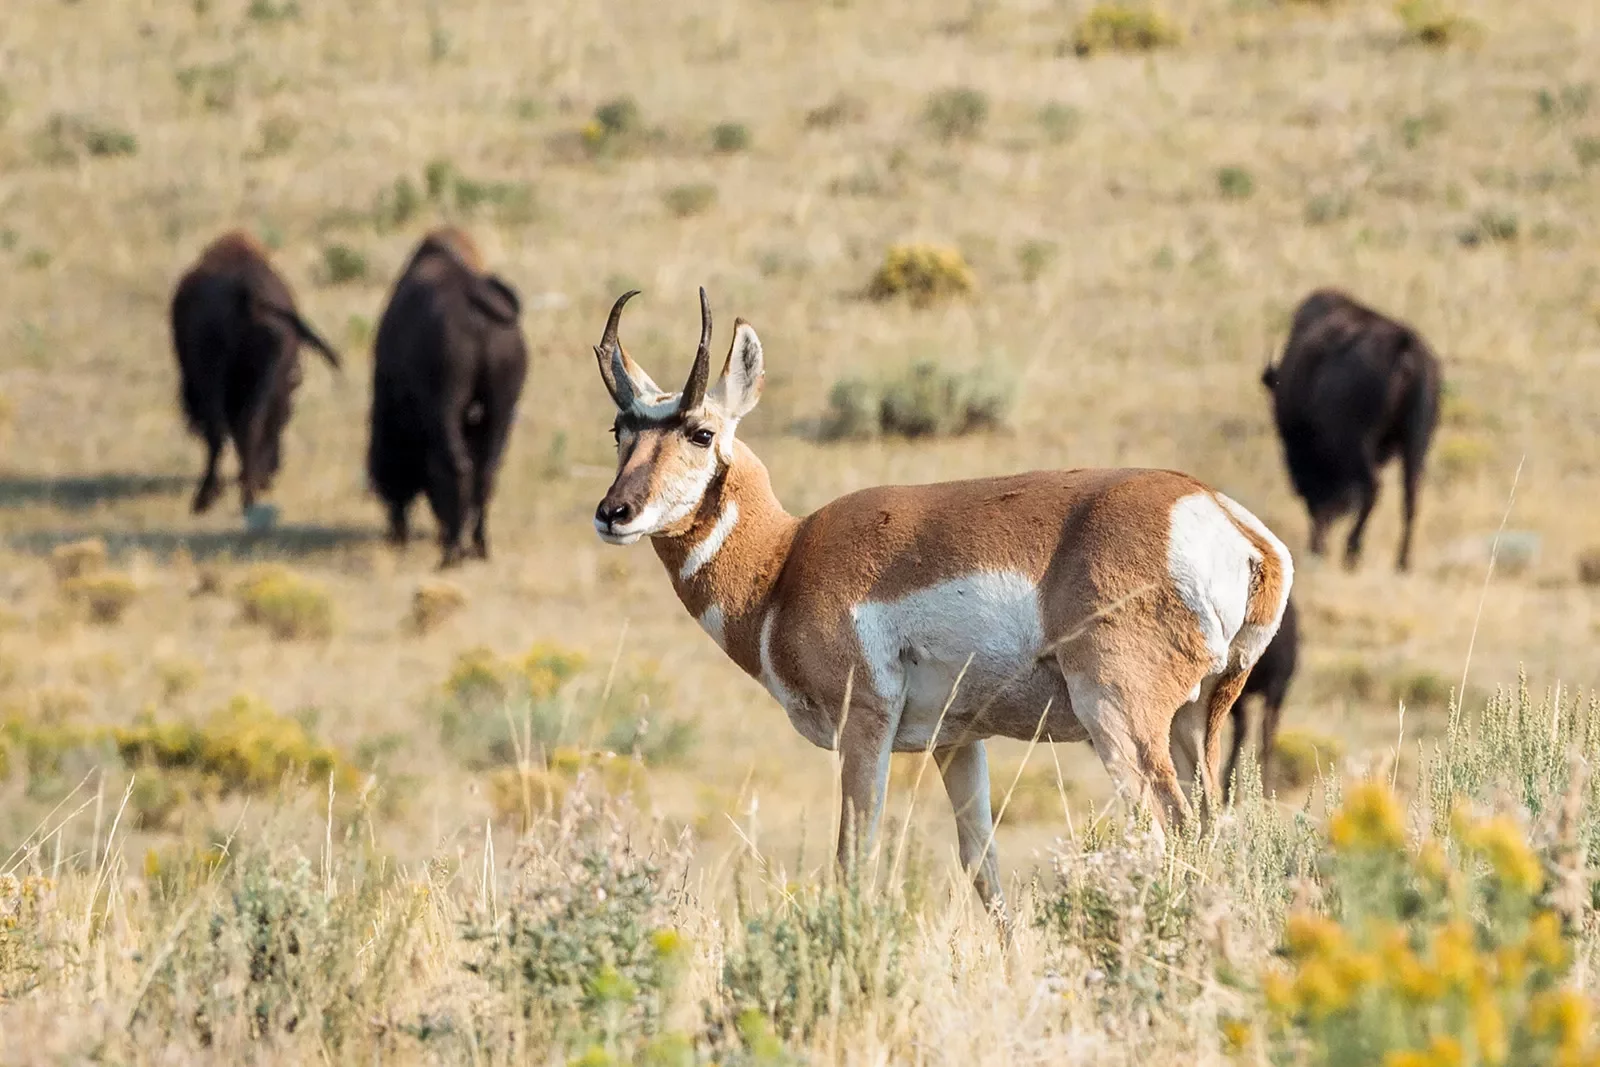 Antelope and Bison traversing through field